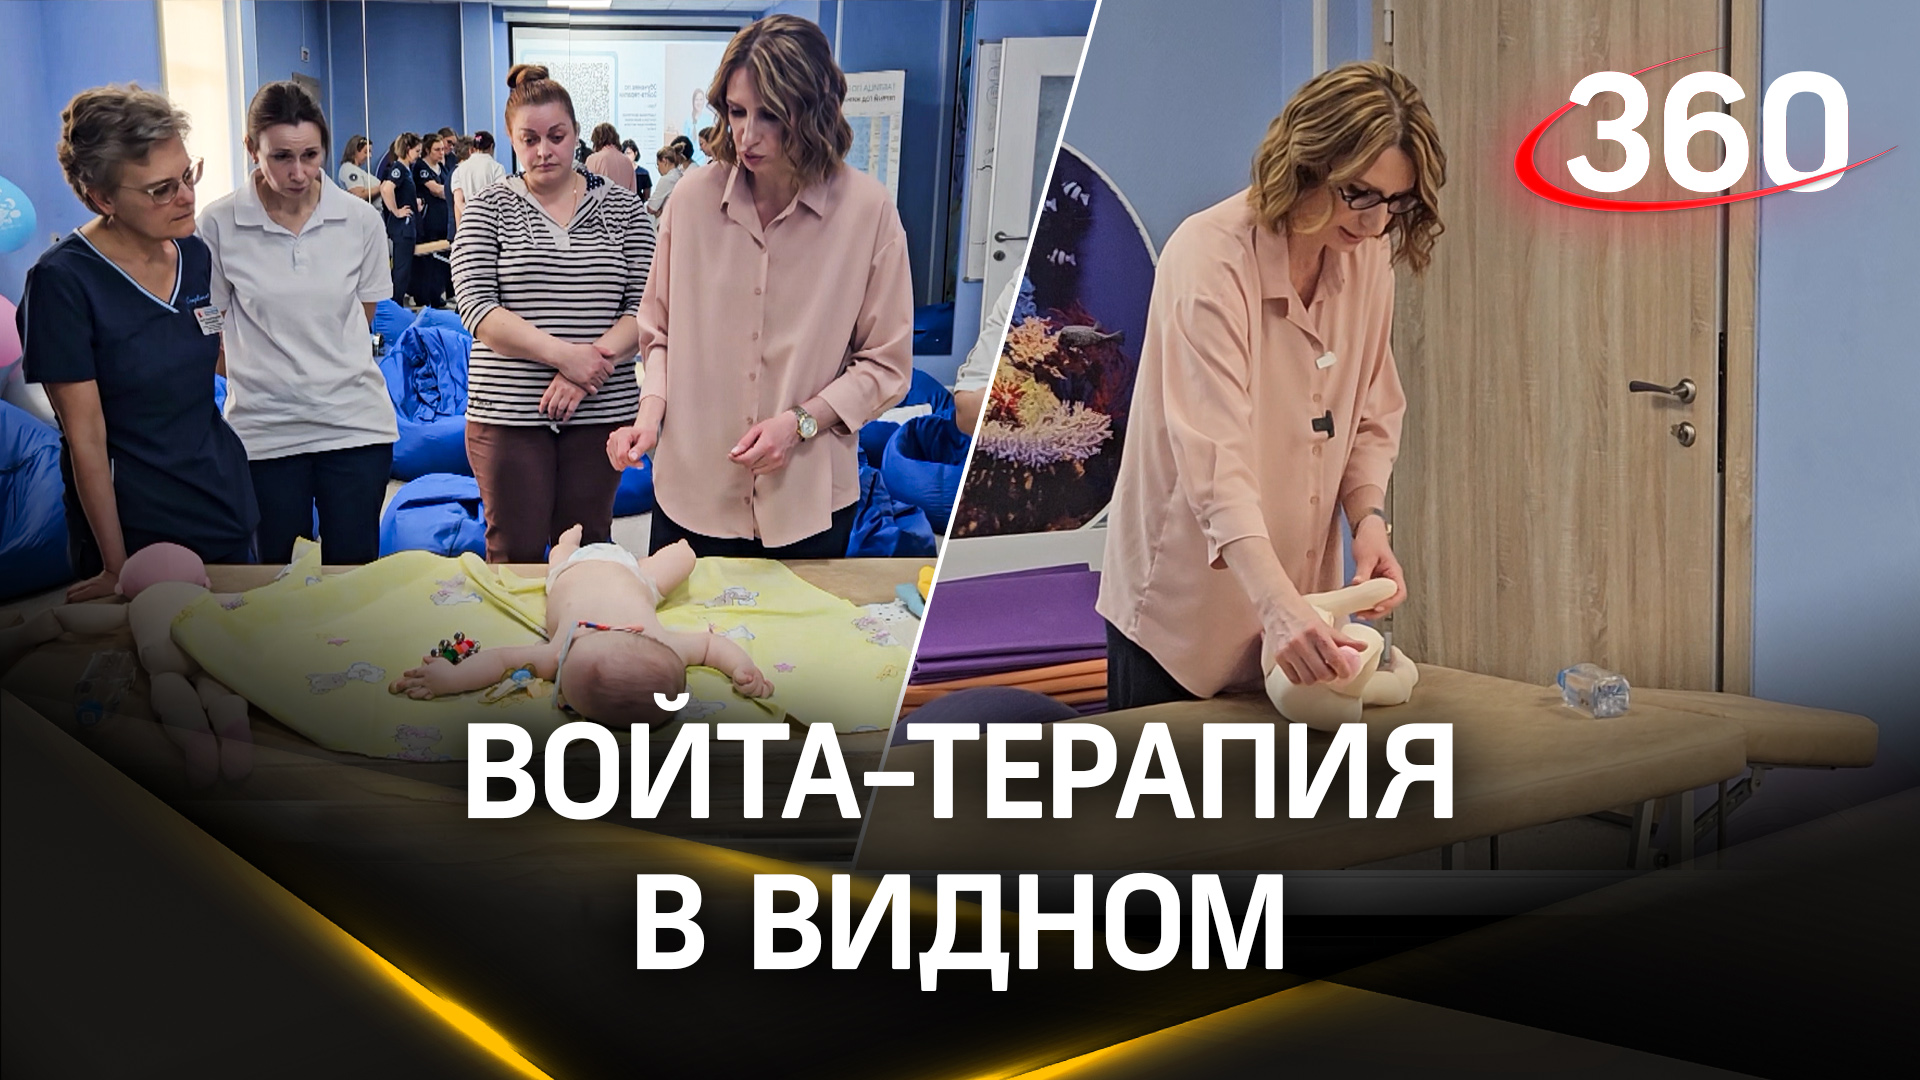 В Видновском перинатальном центре спасают недоношенных от инсульта войта-терапией